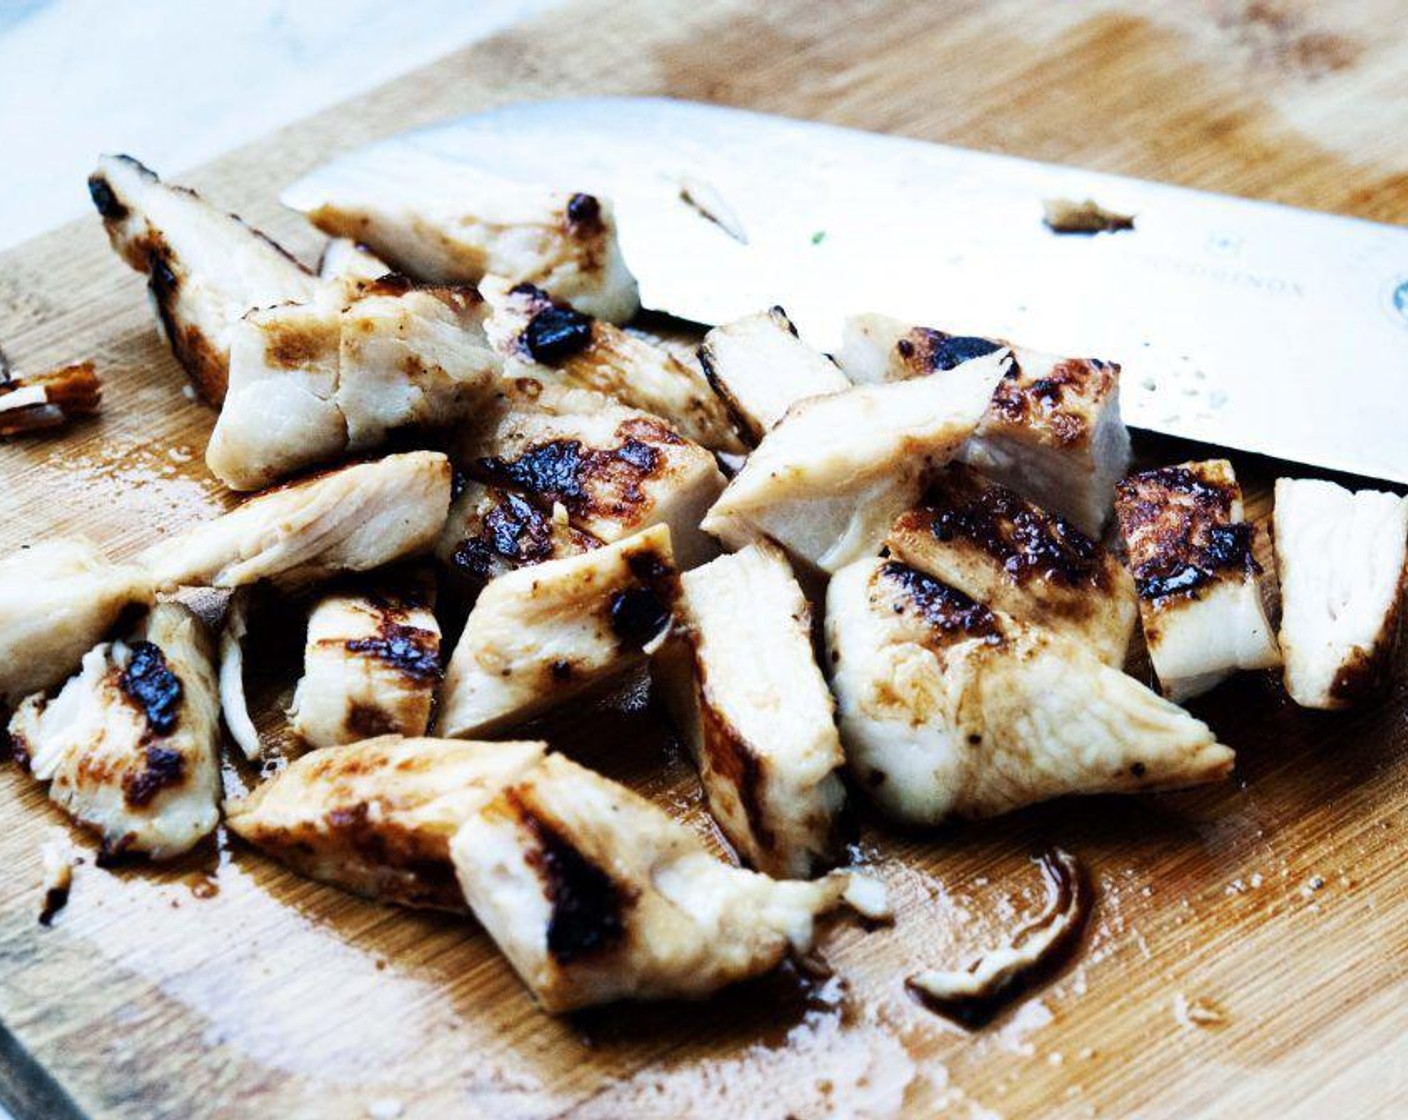 Schritt 5 Hähnchenbrust (250 g) häuten und in Scheiben schneiden. Mit Salz und gemahlenem schwarzen Pfeffer würzen und auf einem heissen Grill oder in einer Pfanne braten. Dann in Würfel schneiden.